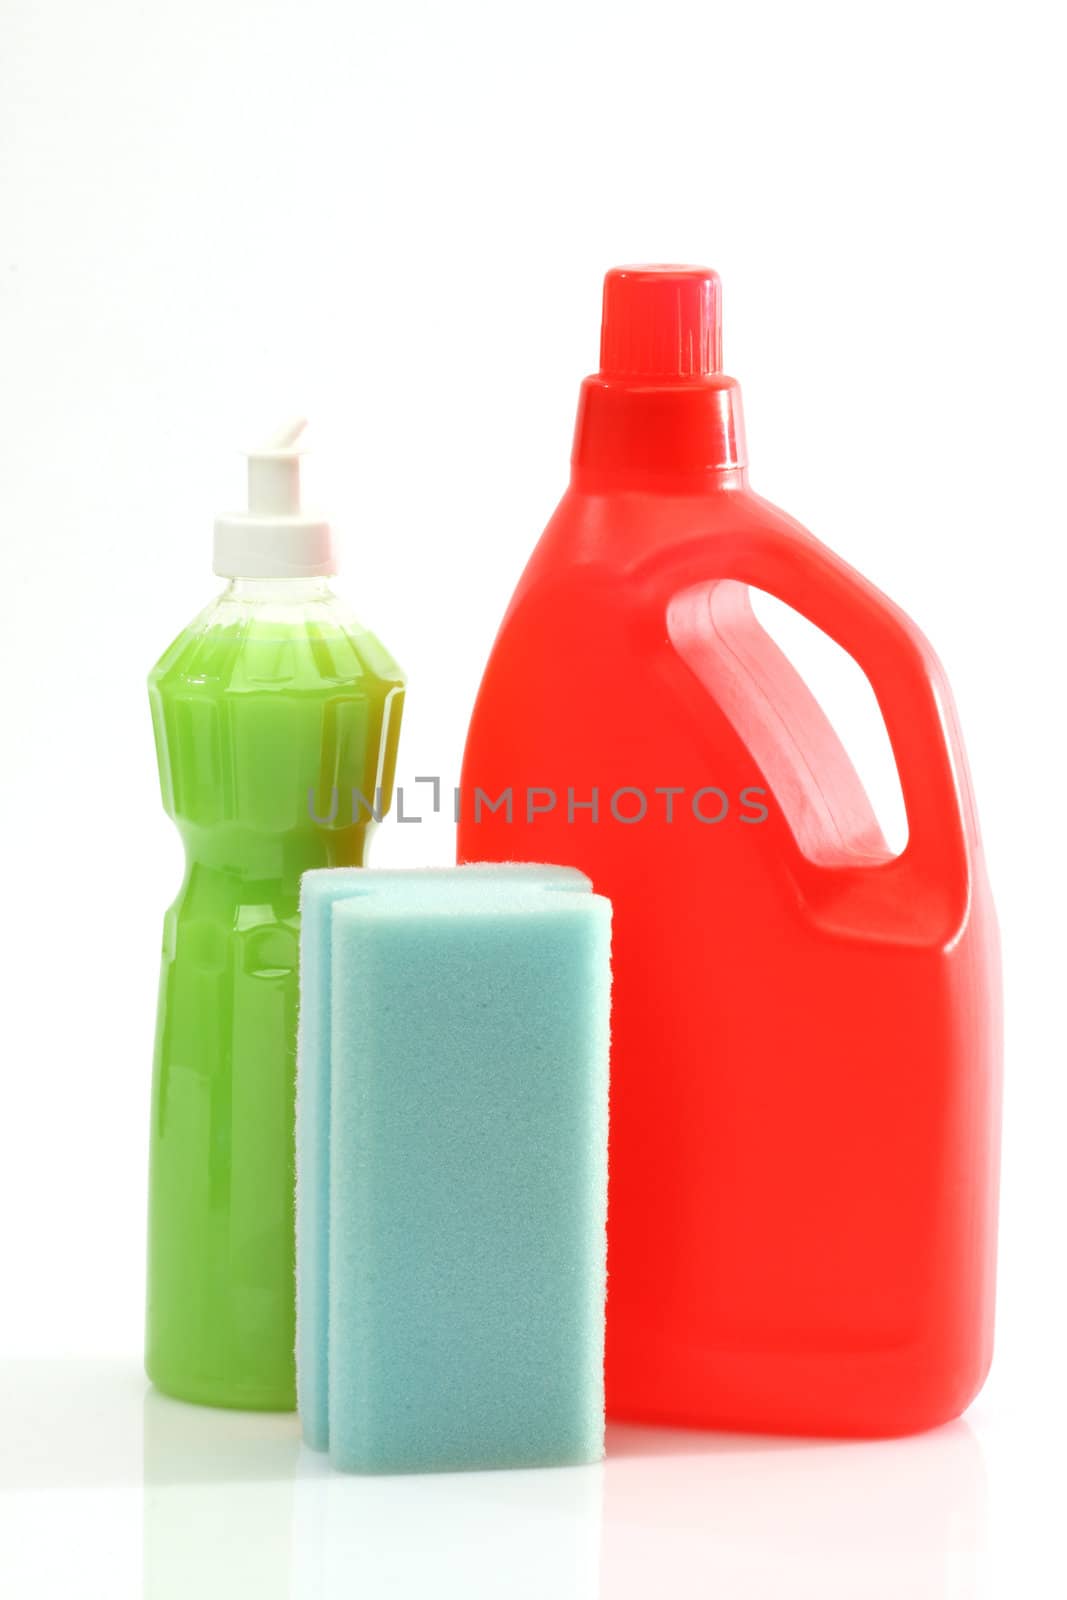 Plastic detergent bottles and sponge over white